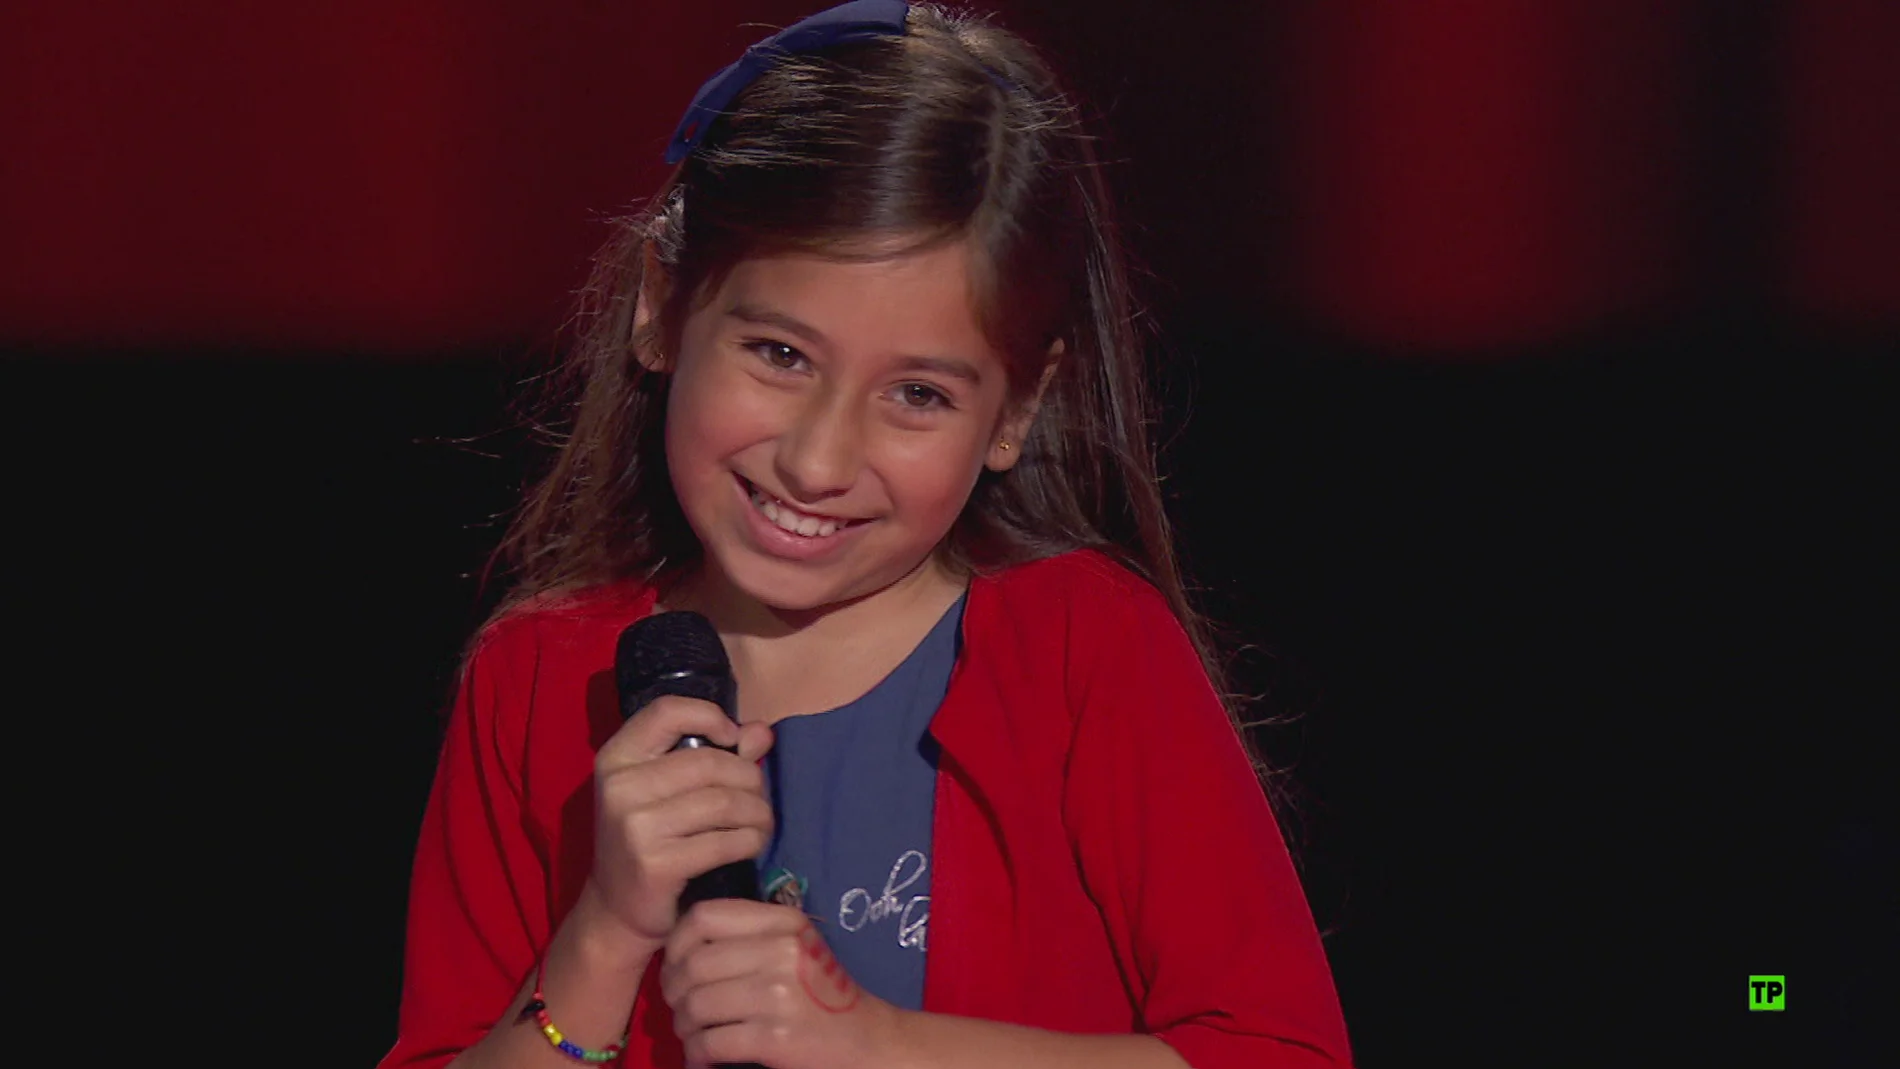 El viernes, el regreso de una talent a 'La Voz Kids': "Mi sueño por fin se ha hecho realidad"